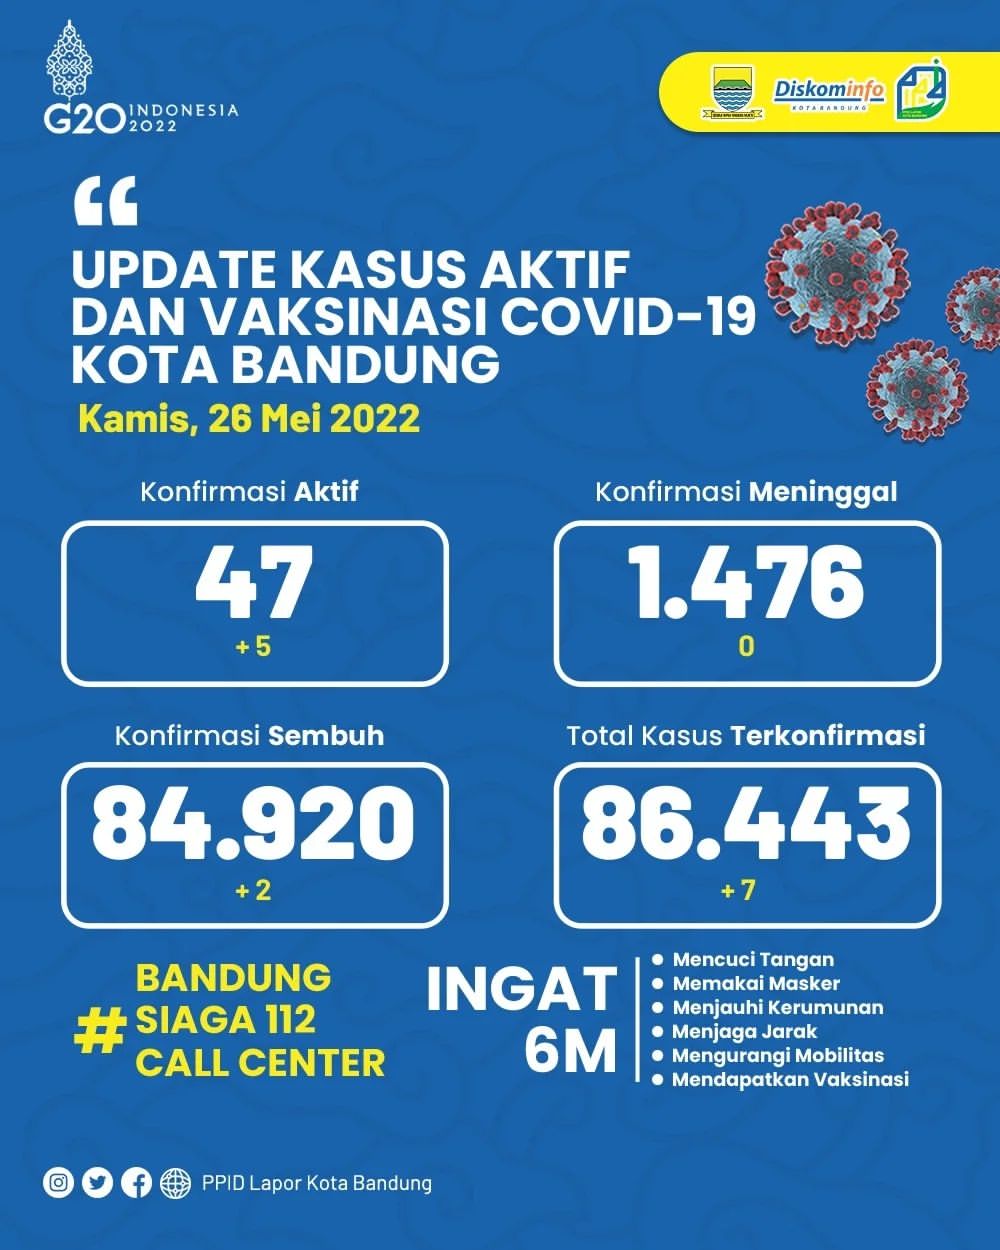 UPDATE STATISTIK COVID-19 DI KOTA BANDUNG PER TANGGAL 26 MEI 2022